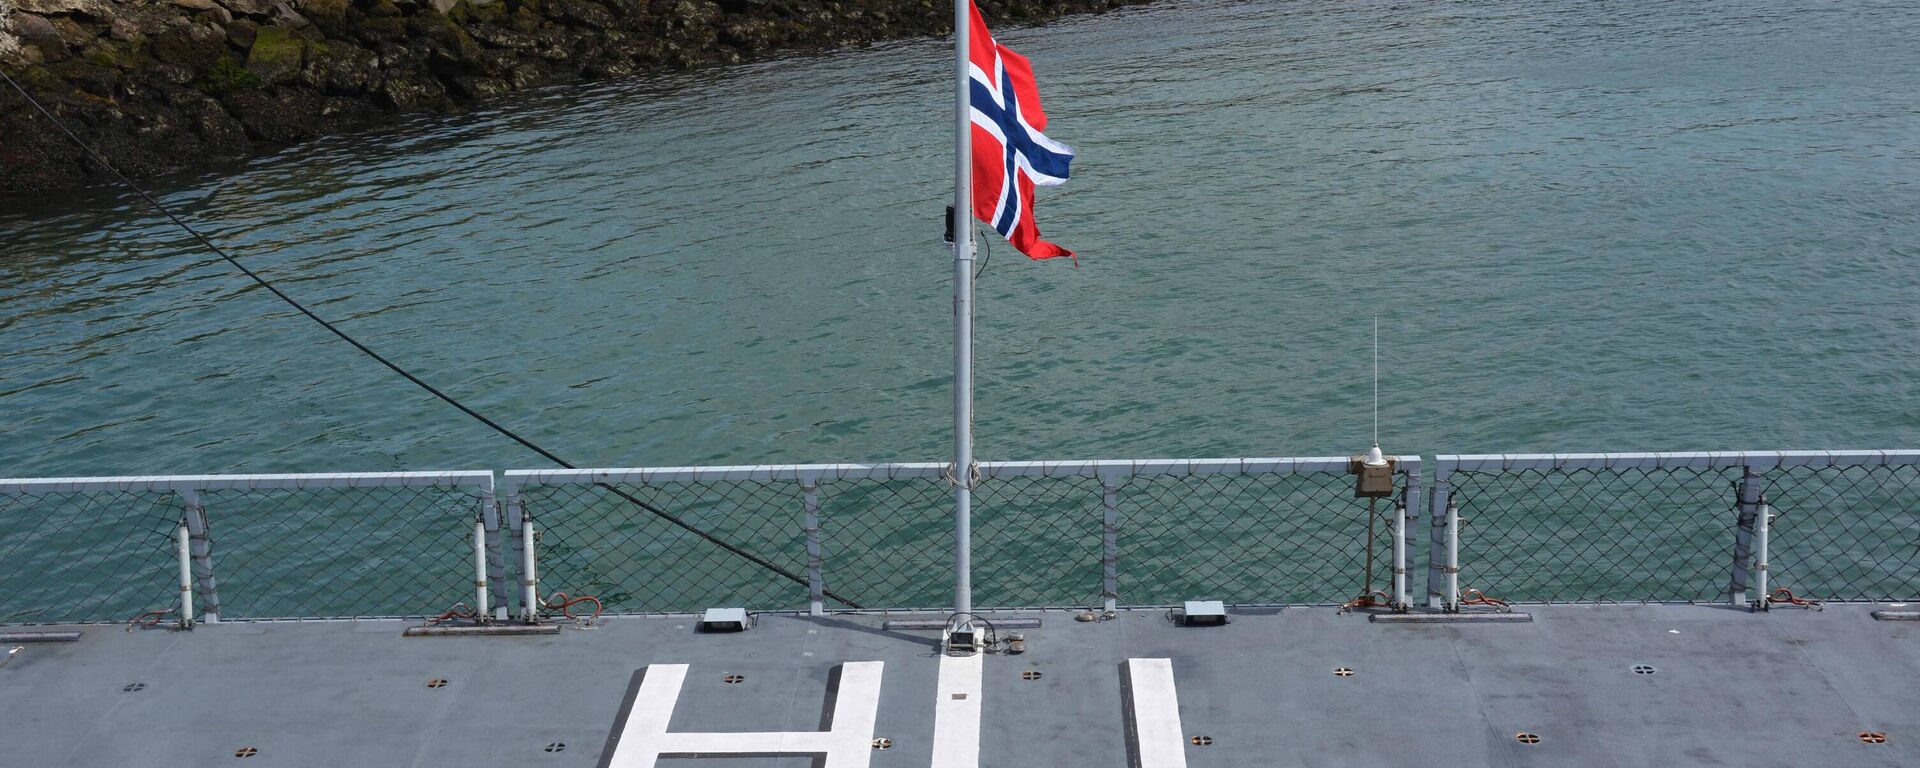 Bandeira da Noruega plantada em fragata HNoMS Thor Heyerdahl (F-314) atracada em Brest, França, 5 de agosto de 2019, durante manobras navais - Sputnik Brasil, 1920, 02.05.2022